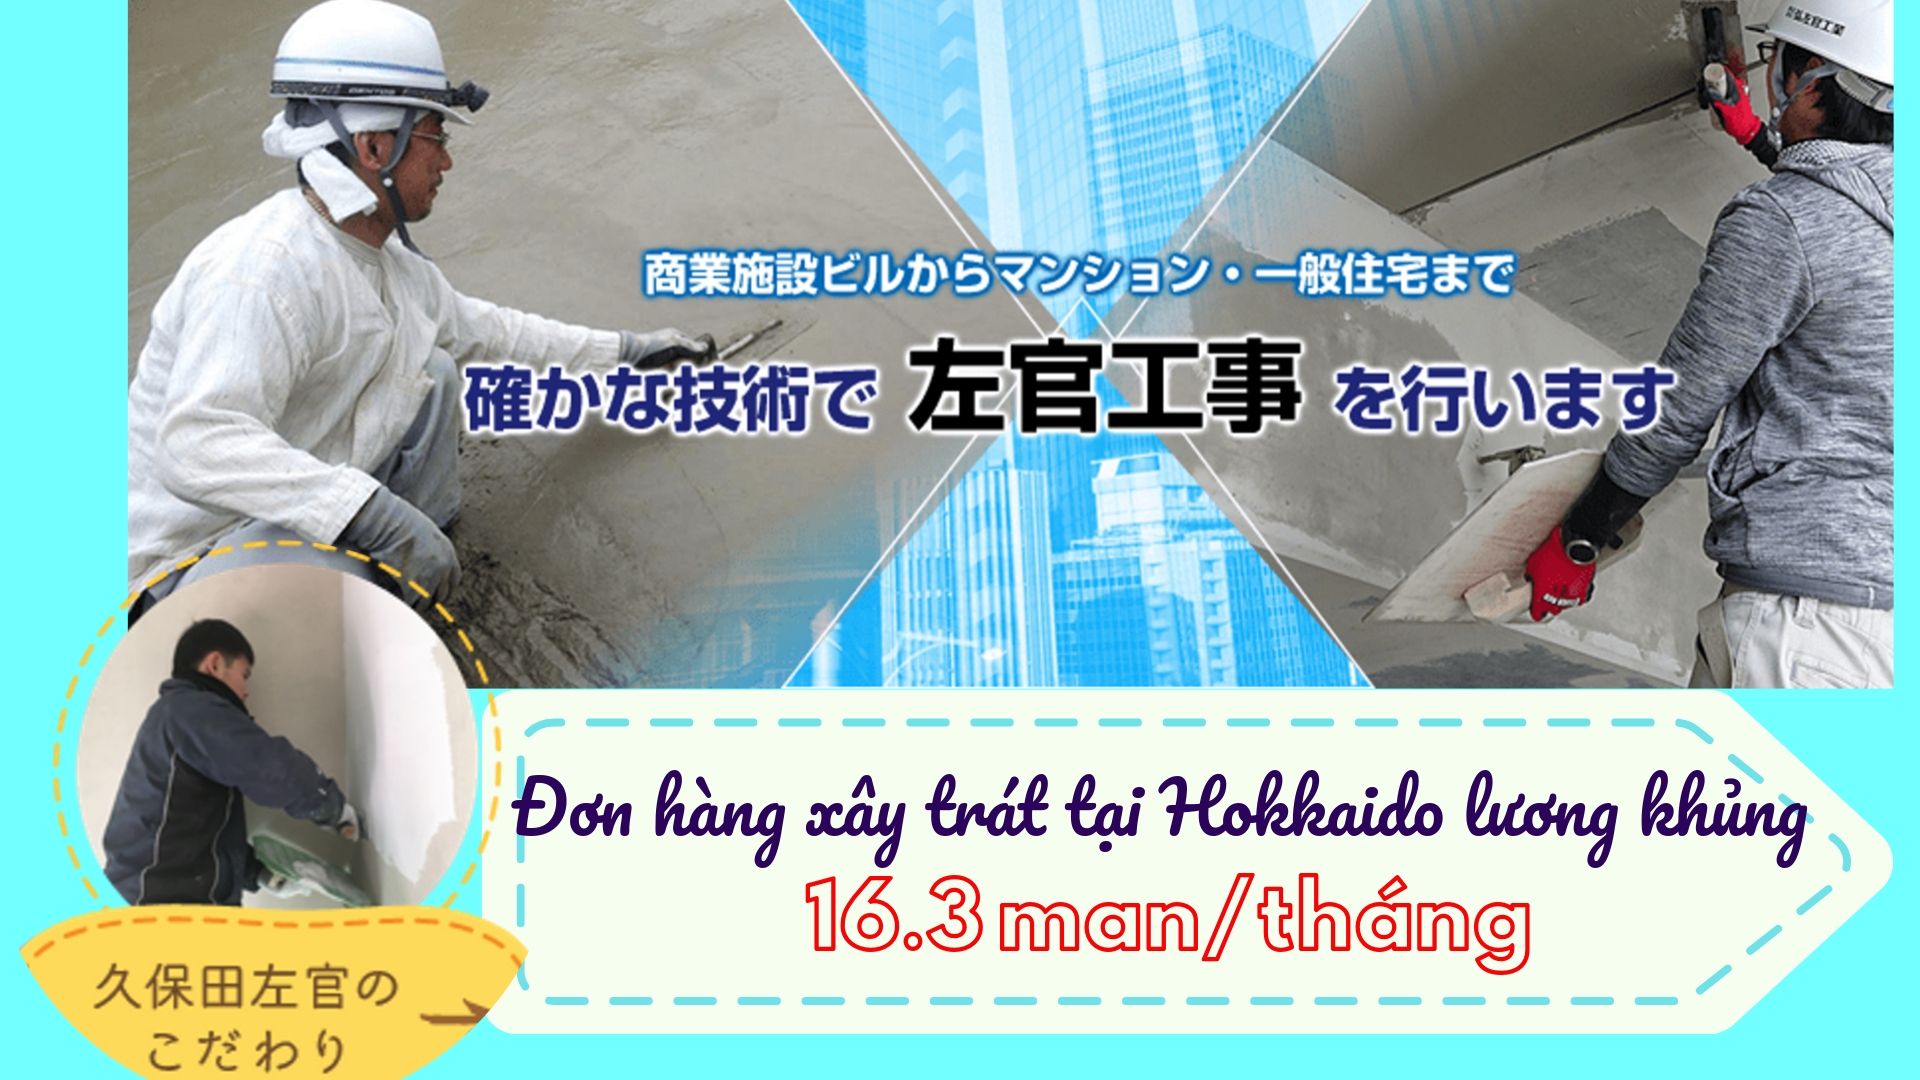 HOT! đơn hàng xây trát tại Hokkaido, Nhật Bản